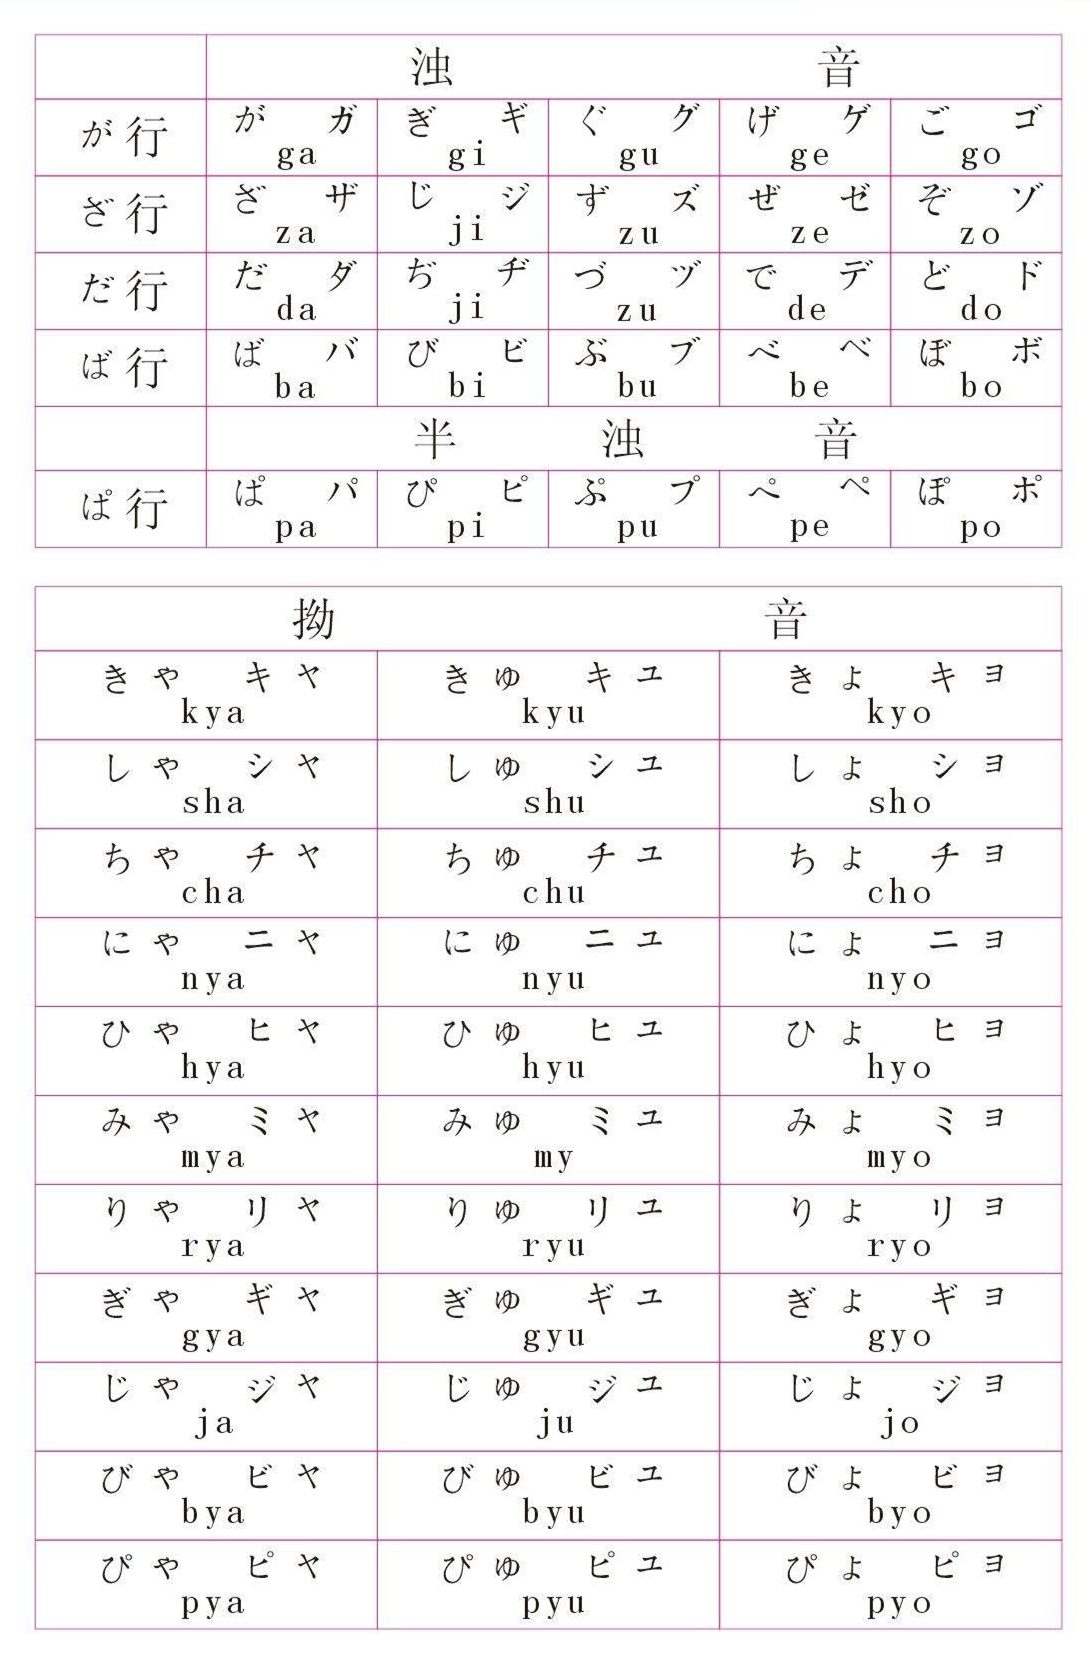 从零开始学日语：五十音、平假名、片假名你都搞懂了吗？ - 哔哩哔哩